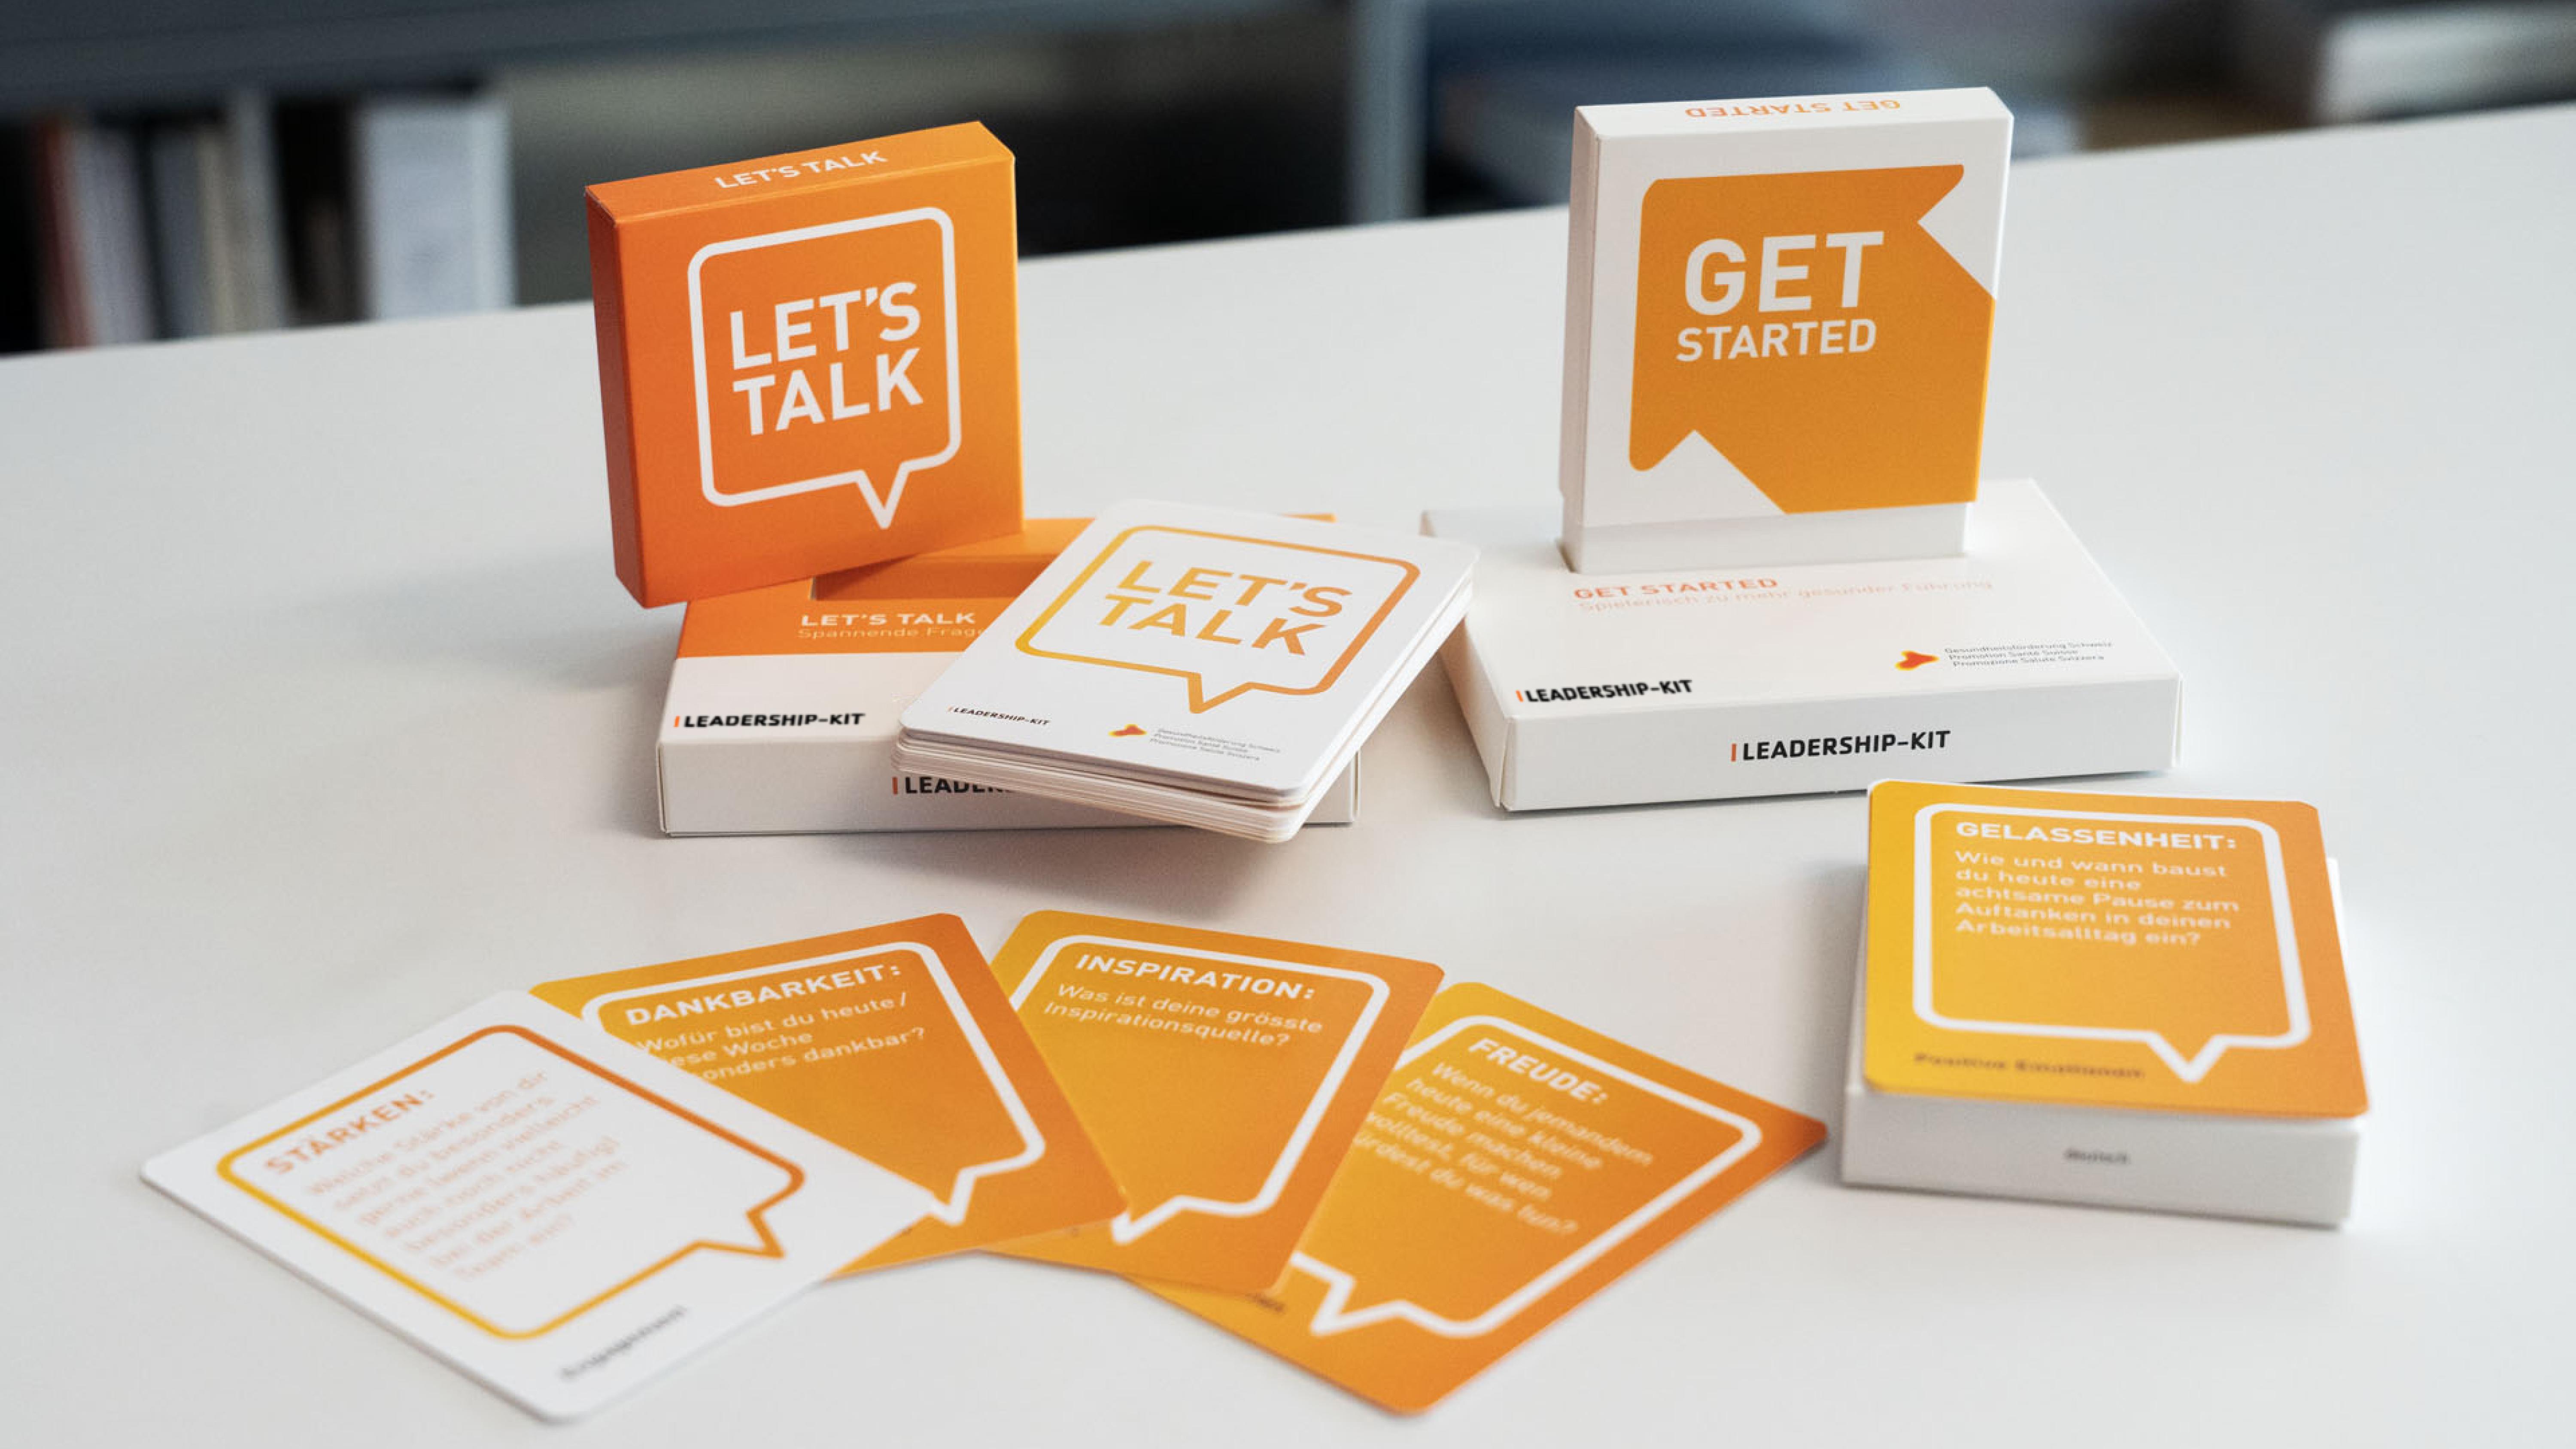 Kartenset "Let's Talk" und "Get started" - Auslegeordnung mit Kartonständer